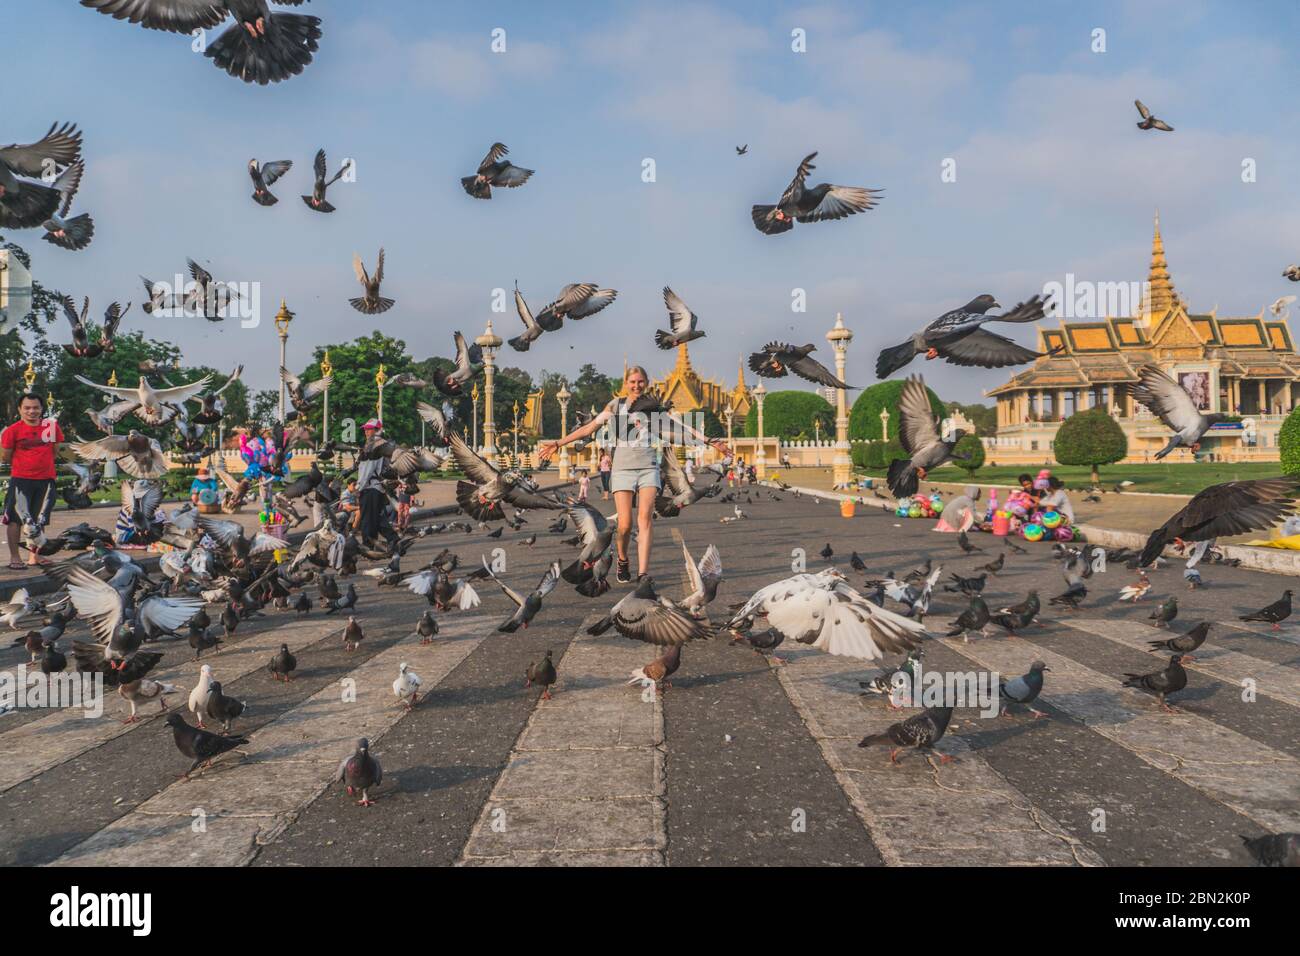 Oiseaux au parc du Palais Royal devant le Palais Royal au quai Sisowath, sur la rivière Tonle SAP, dans la ville de Phnom Penh, au Cambodge. Phnom Penh, Cambodge - 22 FÉVRIER 2020 Banque D'Images